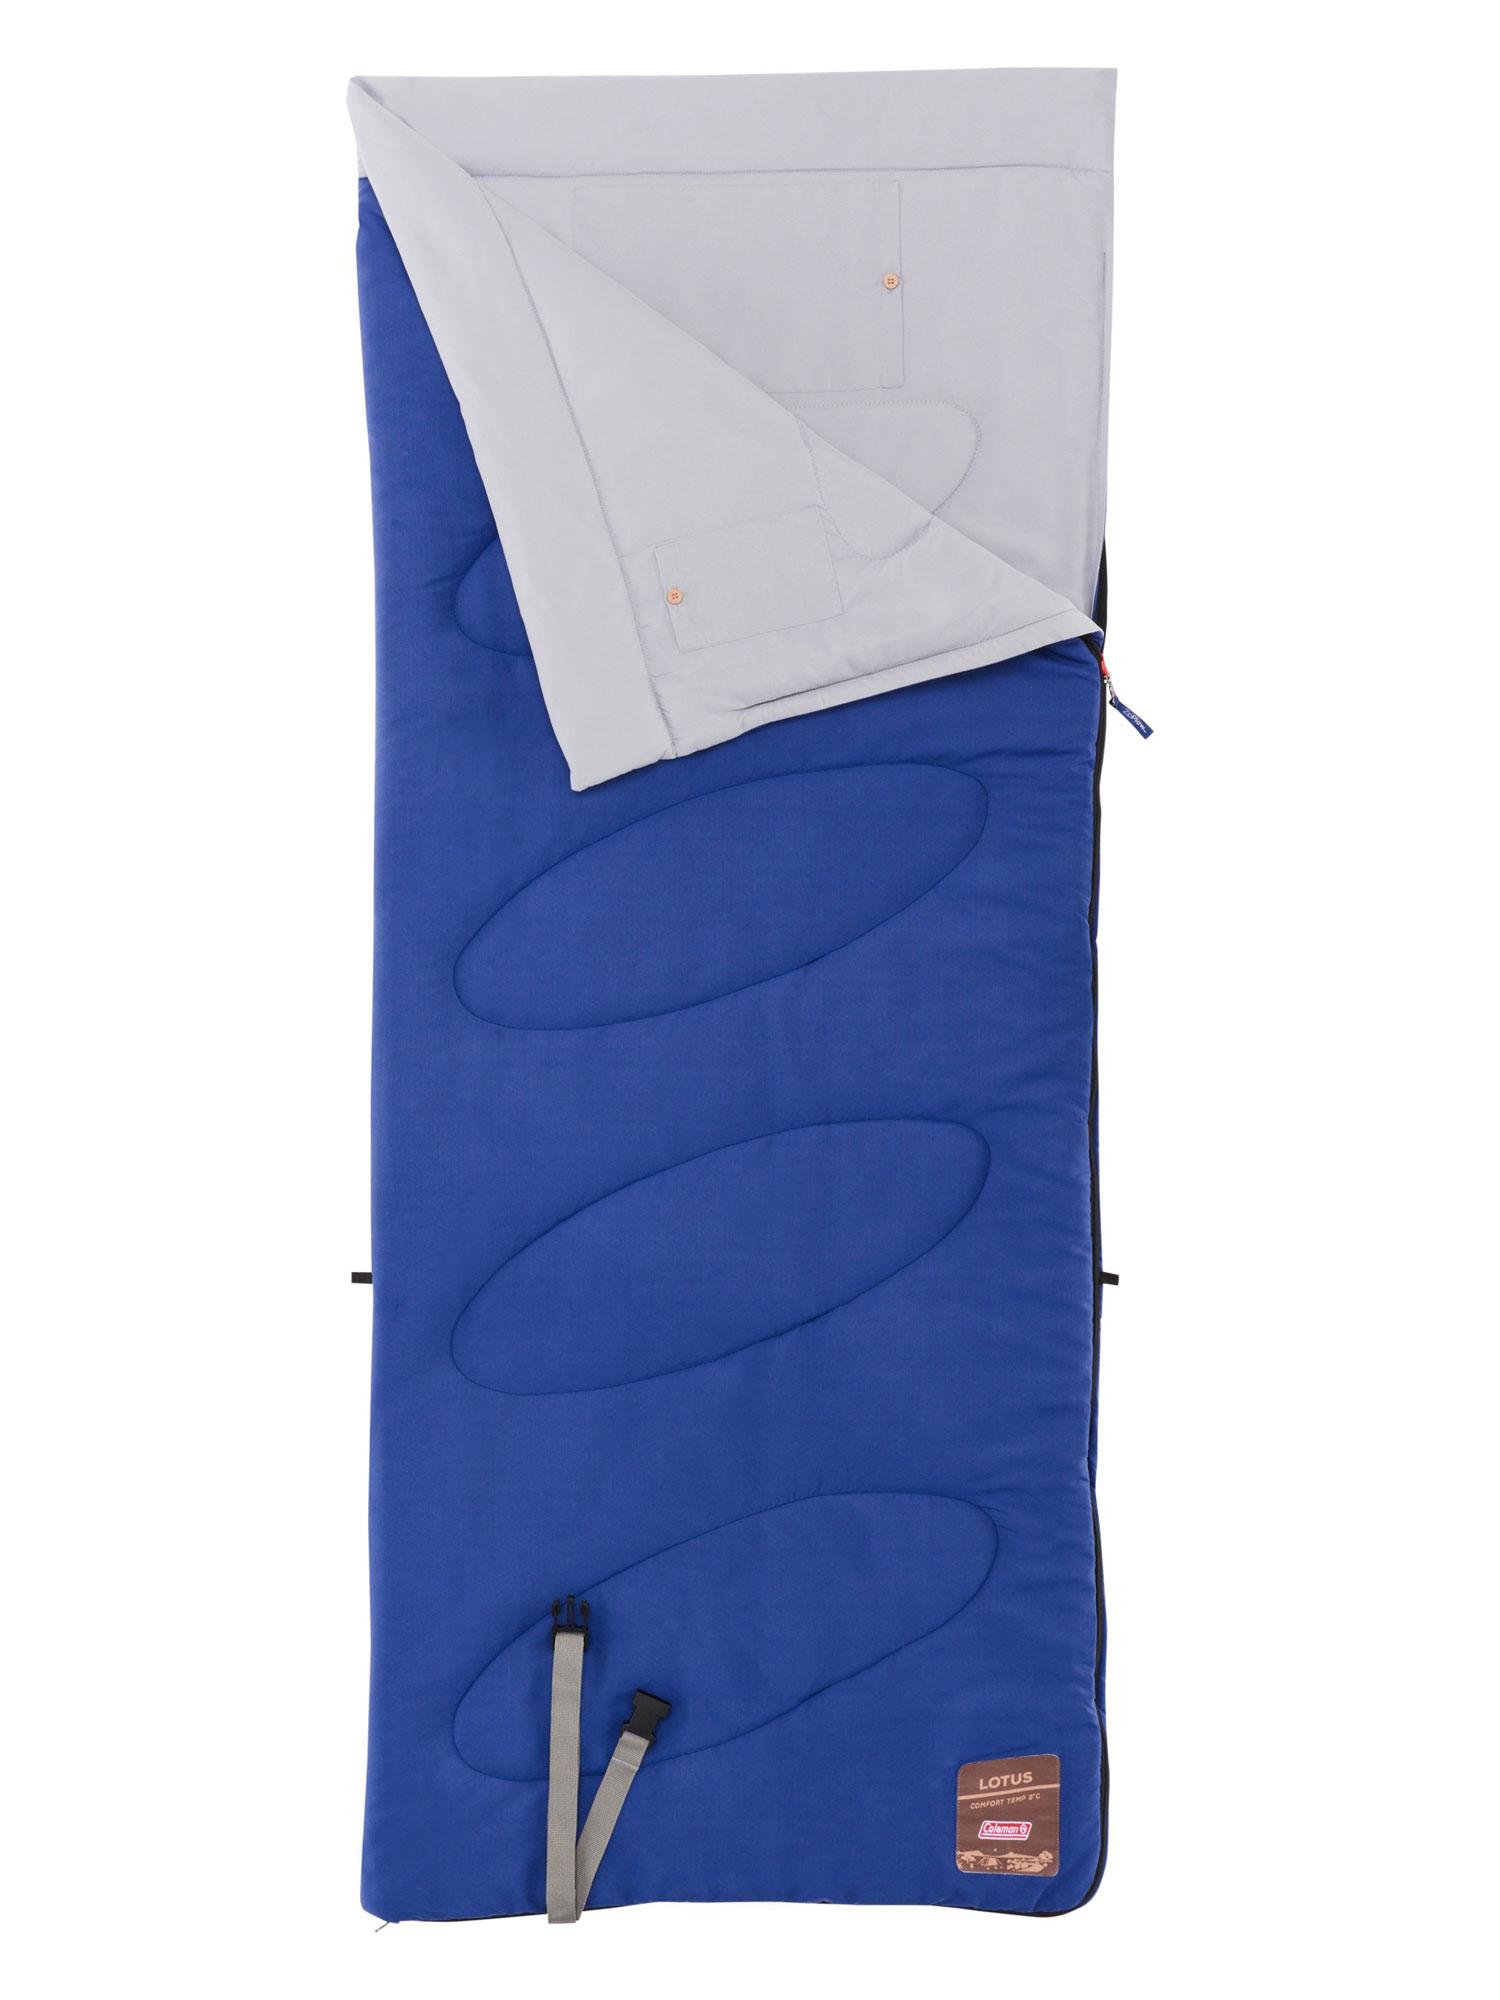 Selected image for COLEMAN Vreća za spavanje Lotus S 165x65cm Sleepping Bag plava